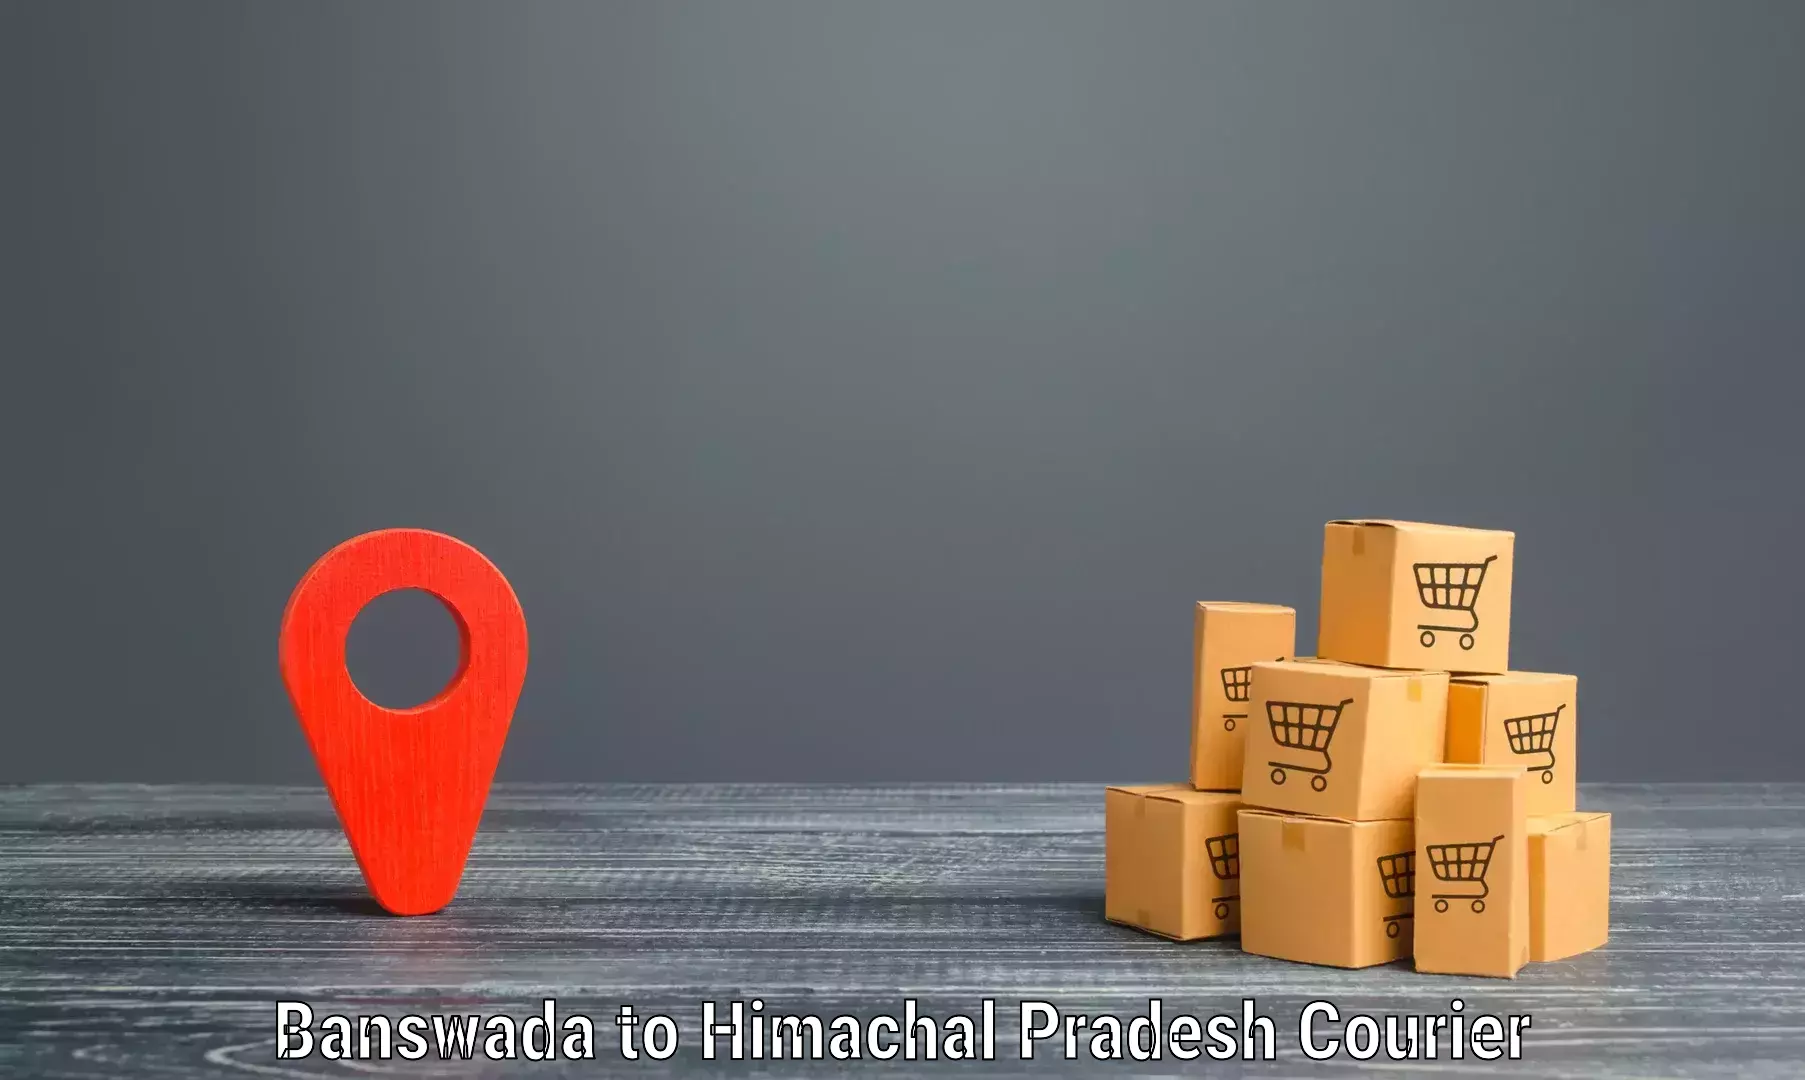 Express delivery capabilities Banswada to Surajpur Jhikla